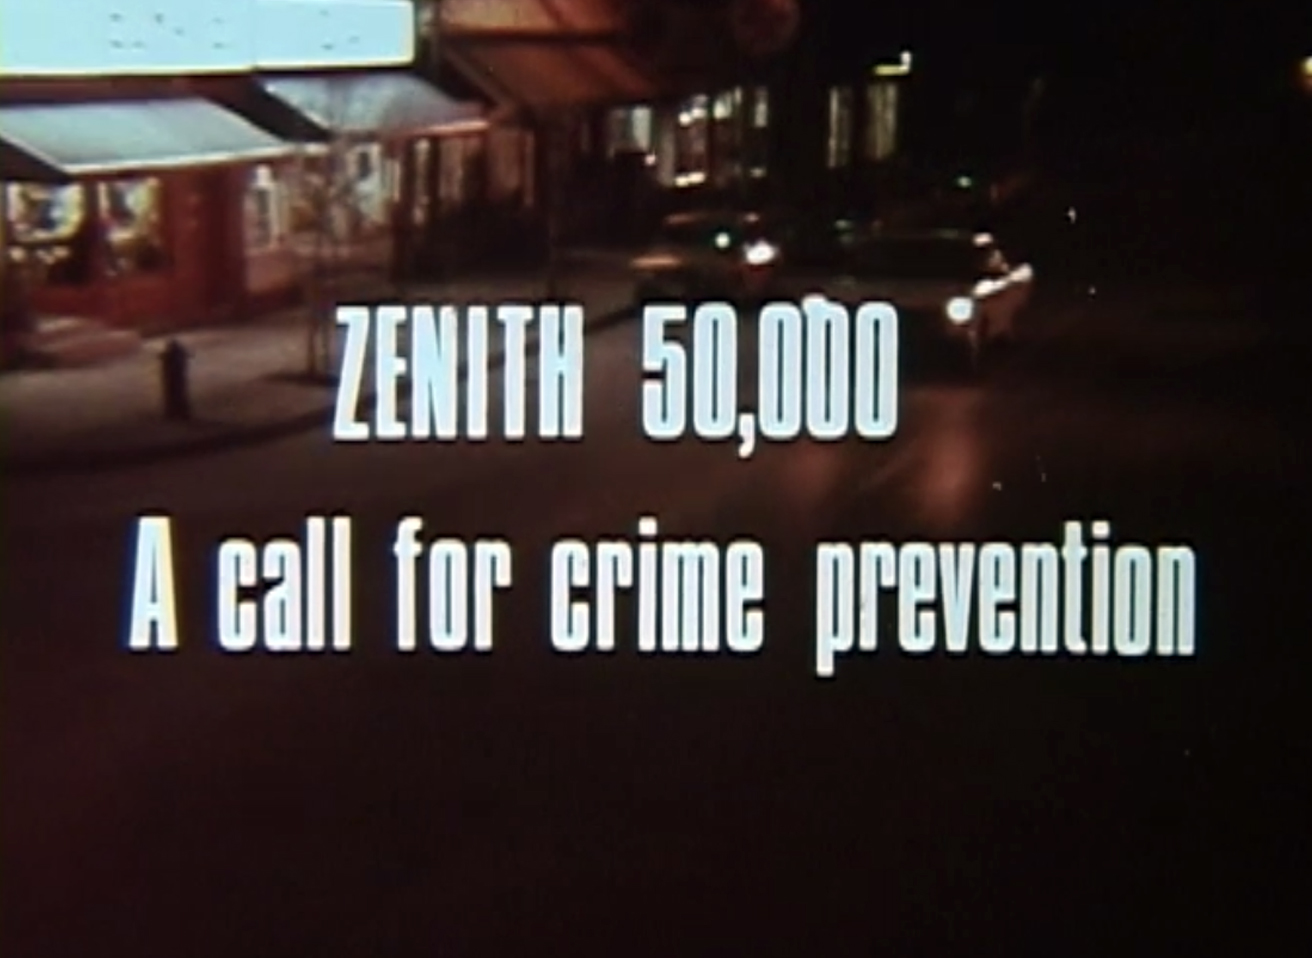 Zenith 50,000